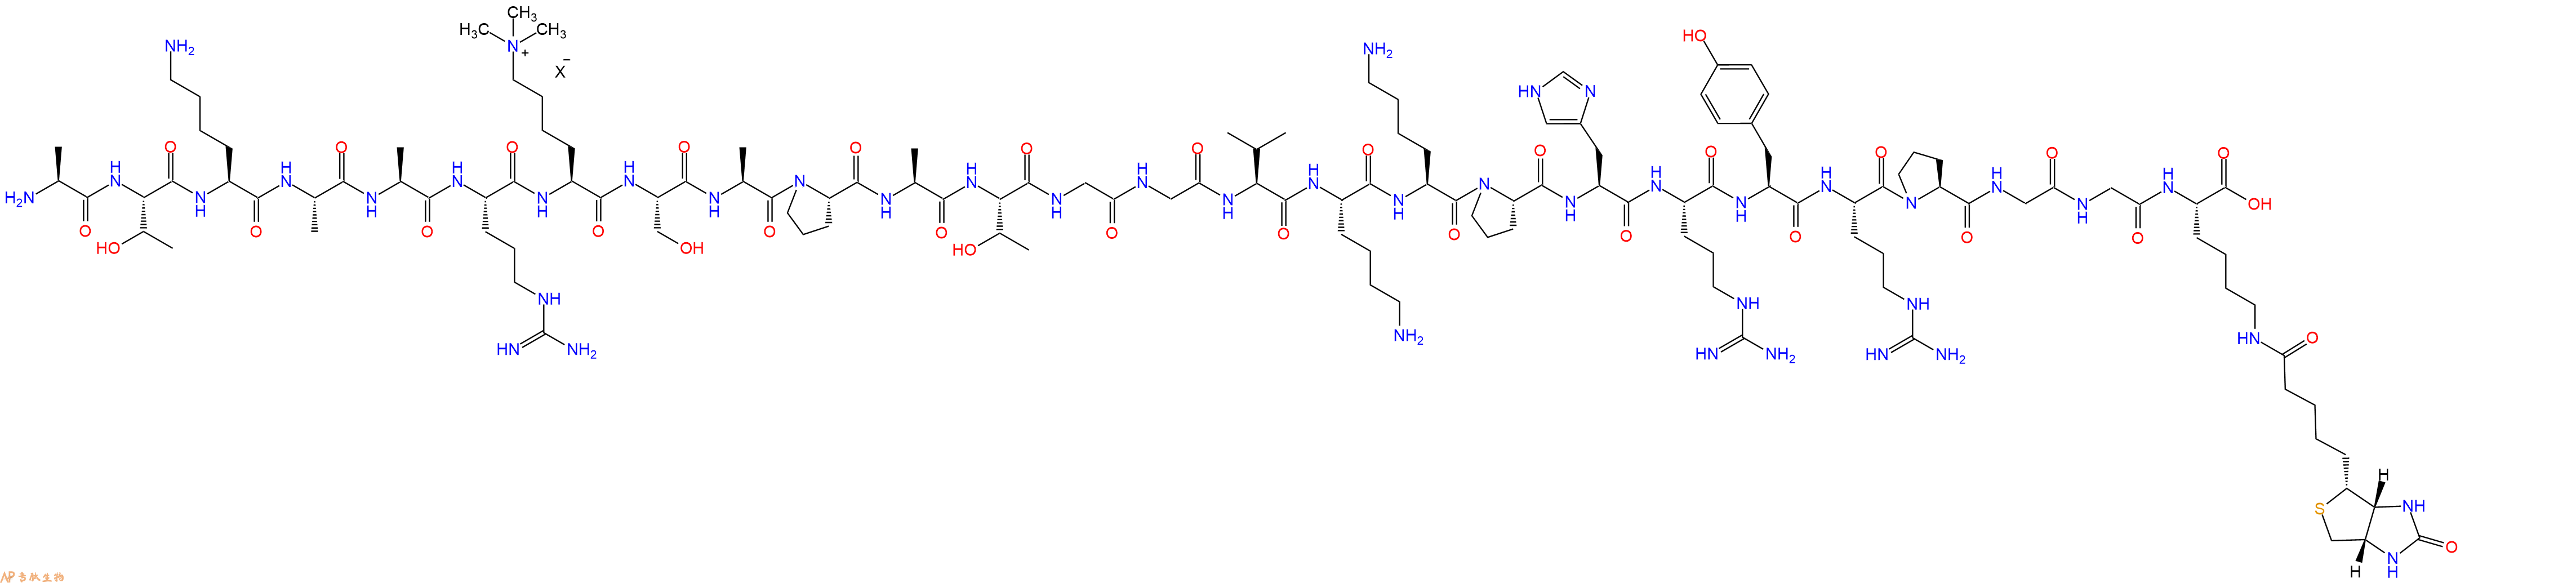 专肽生物产品组蛋白肽段[Lys(Me3)27]-Histone H3(21-44)-GK(Biotin)